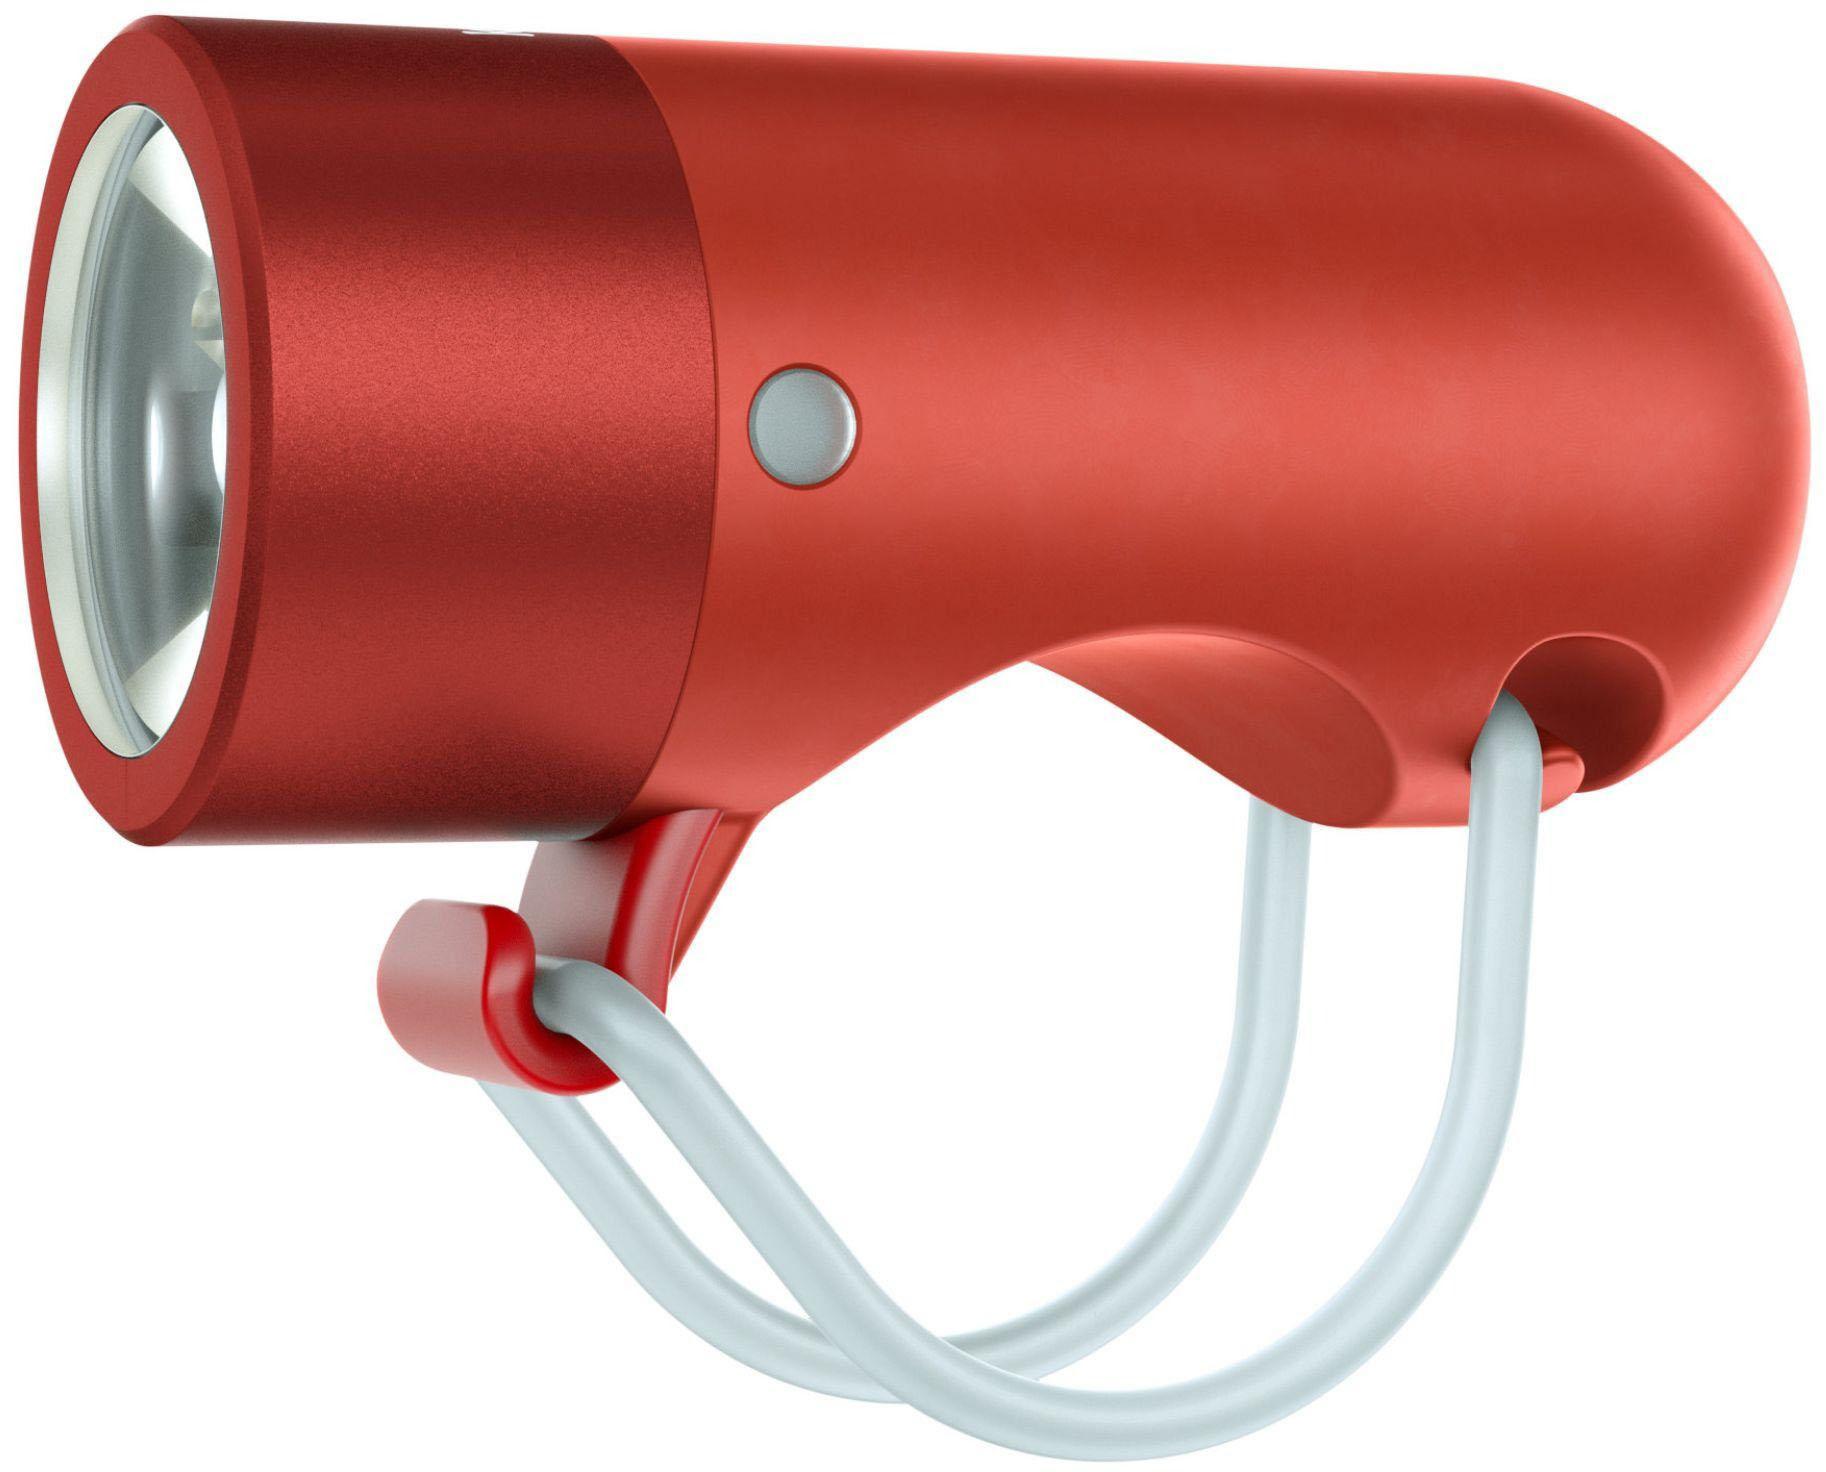 Knog Plug Front Light - Red